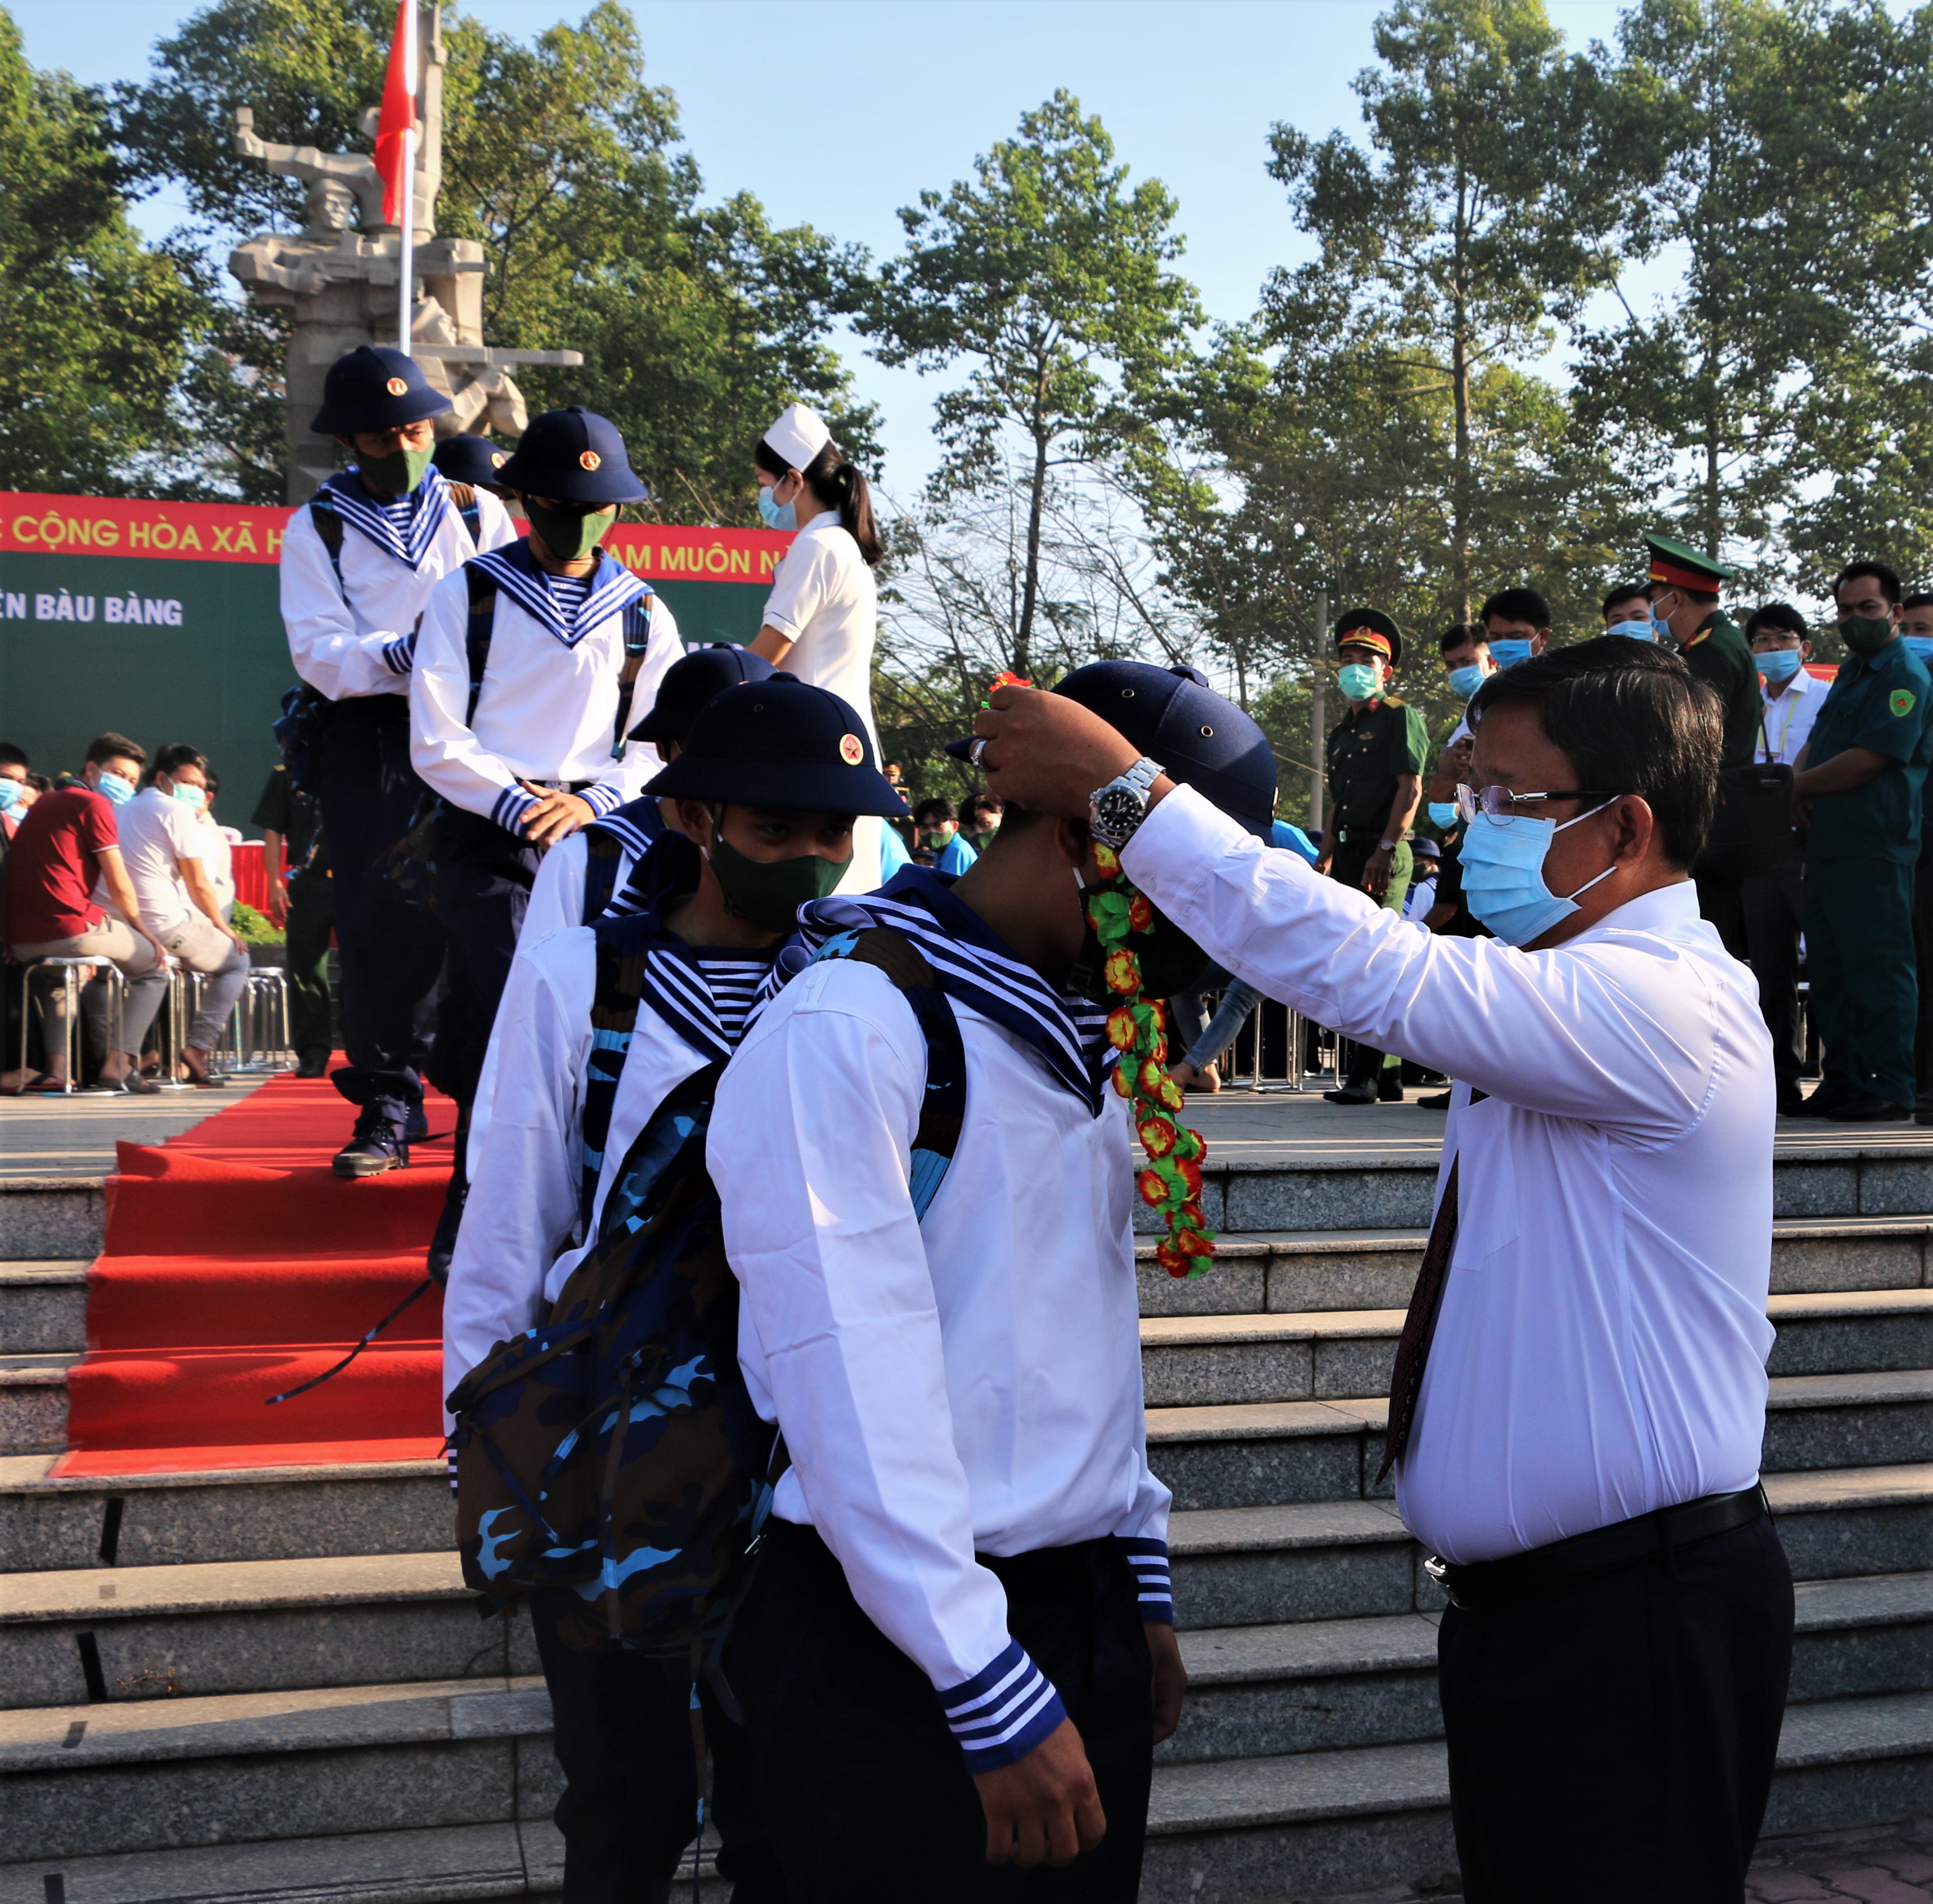 Huyện Bàu Bàng long trọng tổ chức lễ giao nhận quân năm 2021